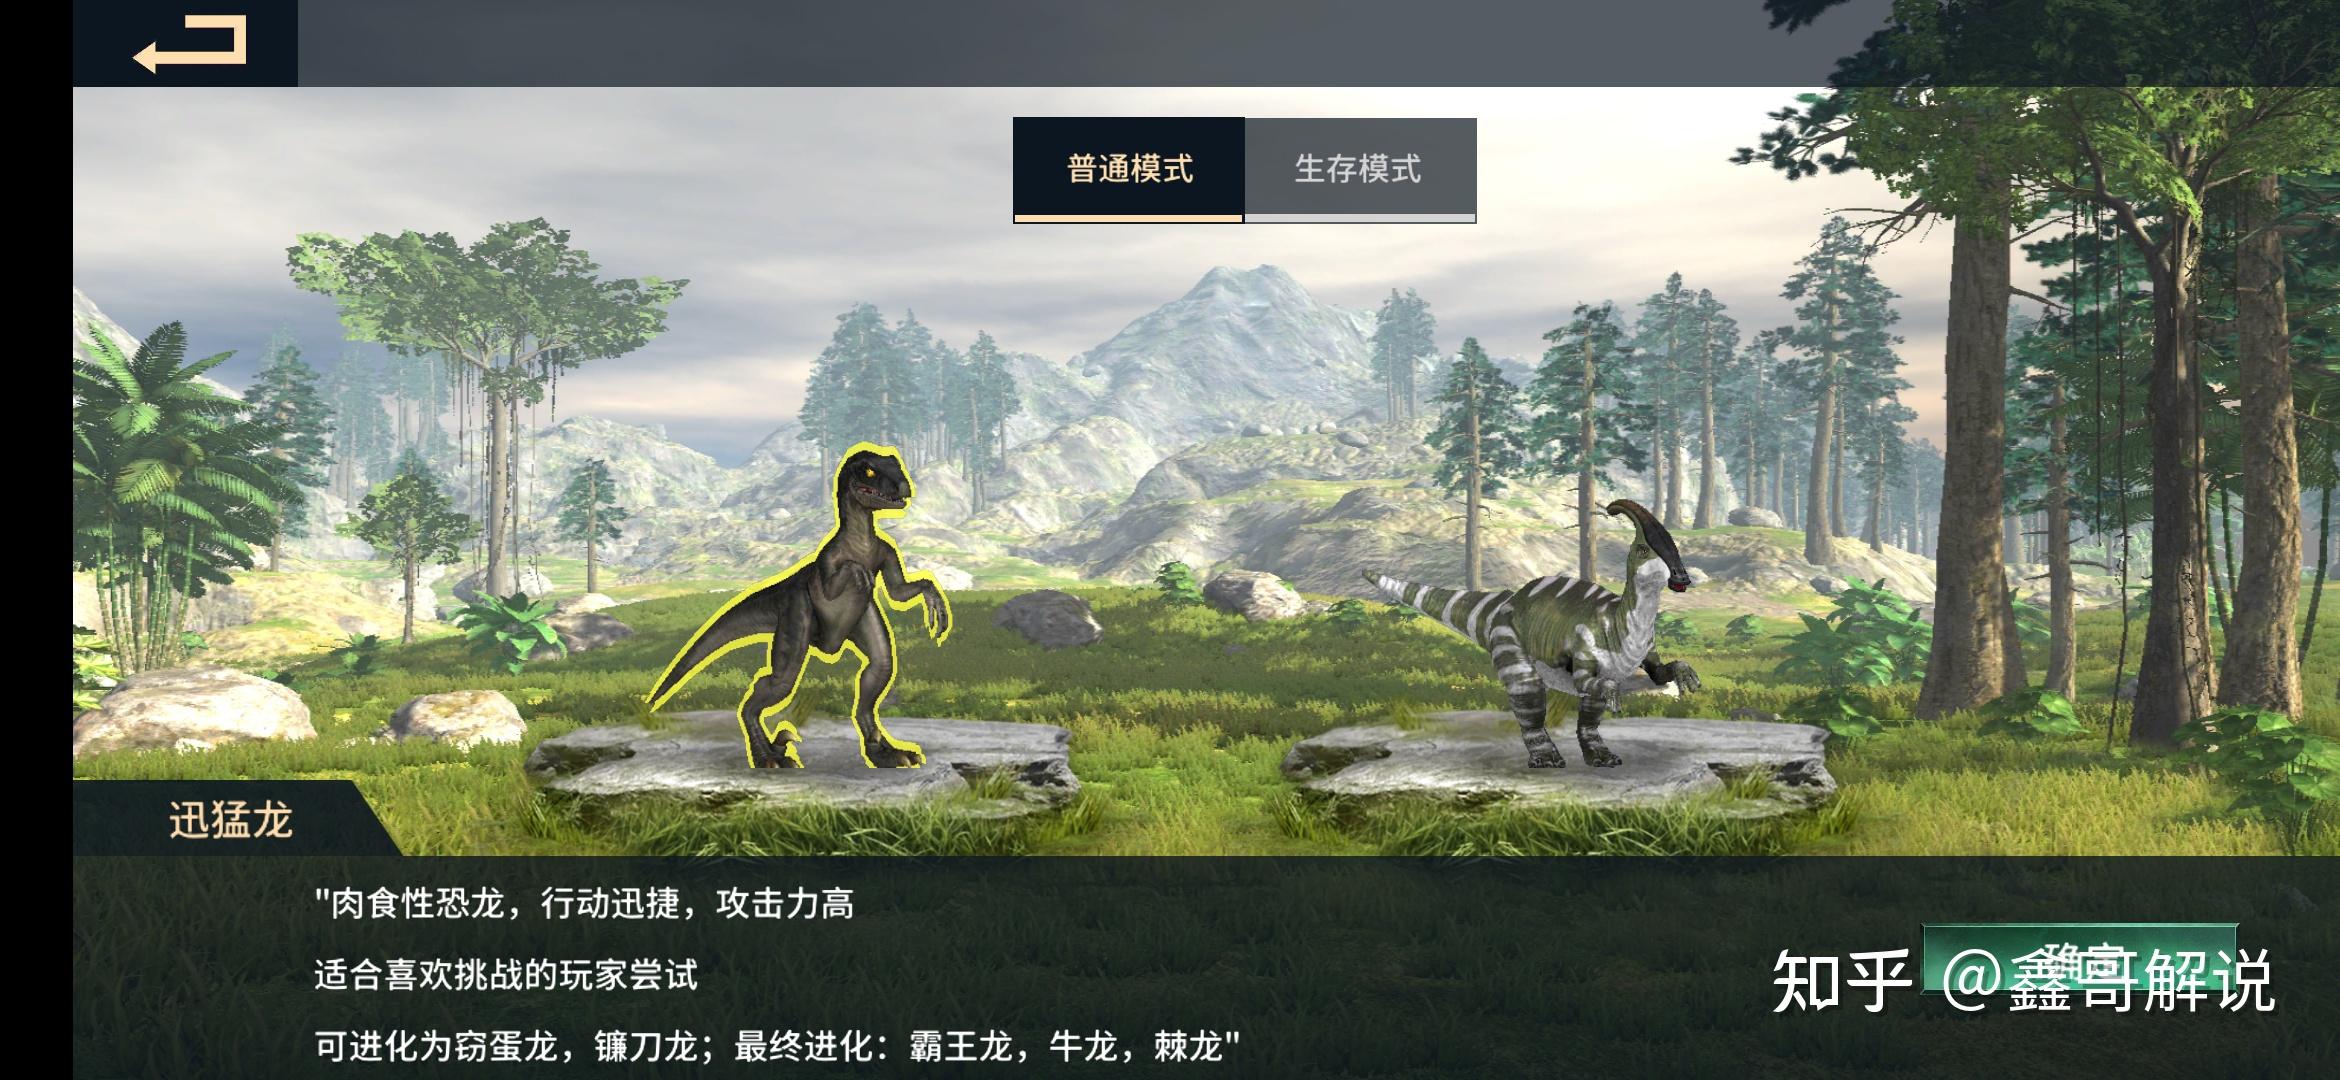 恐龙进化的手机游戏_恐龙进化手机游戏是什么_进化恐龙的手机游戏是什么